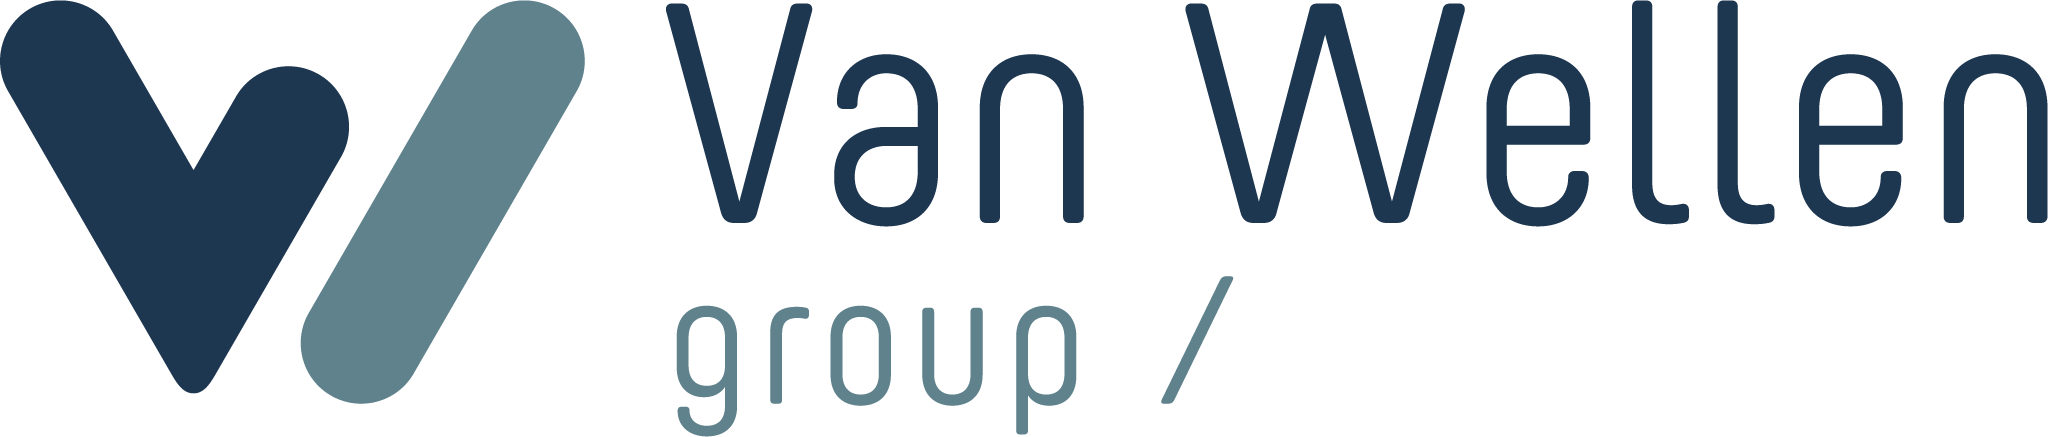 Van Wellen Group_logo